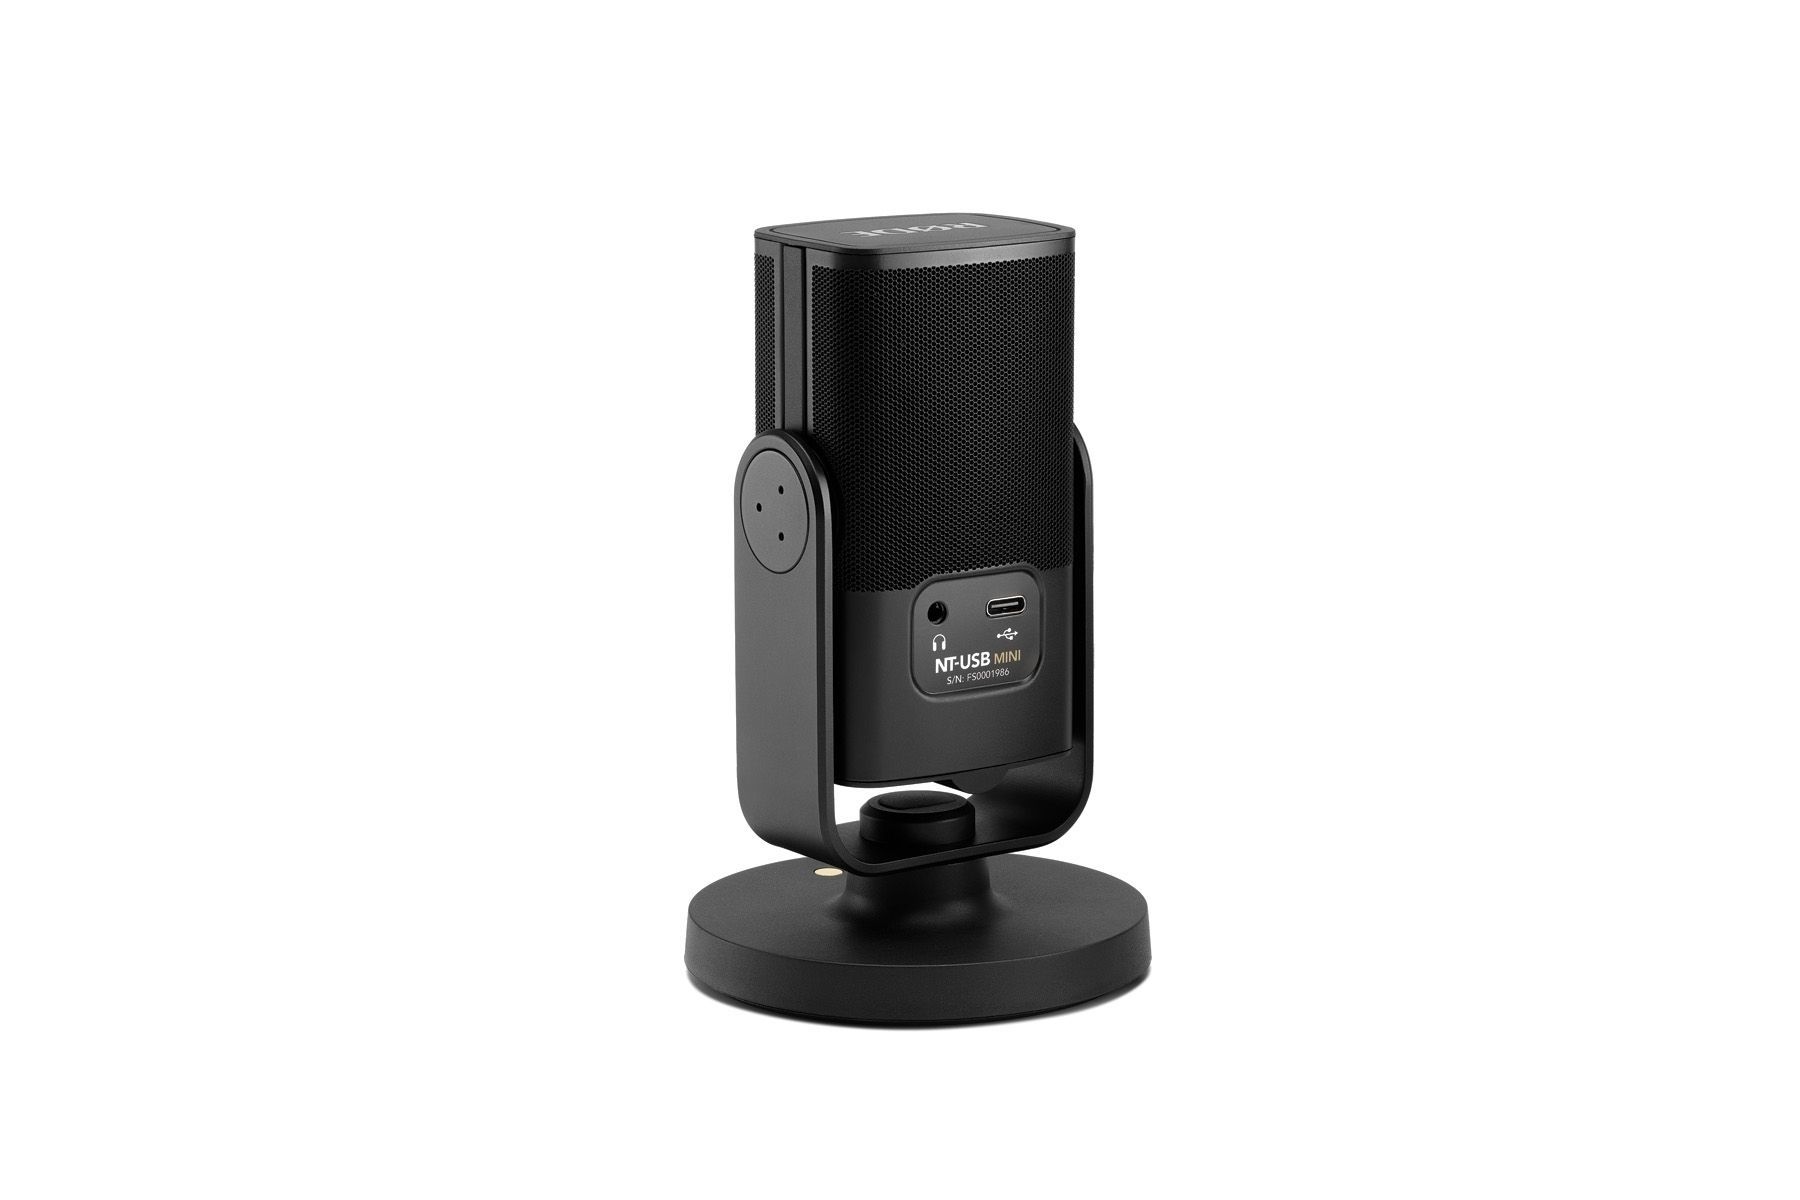 RODE NT-USB Mini USB-Studio-Kondensatormikrofon ideal zum Podcasten und Streamen